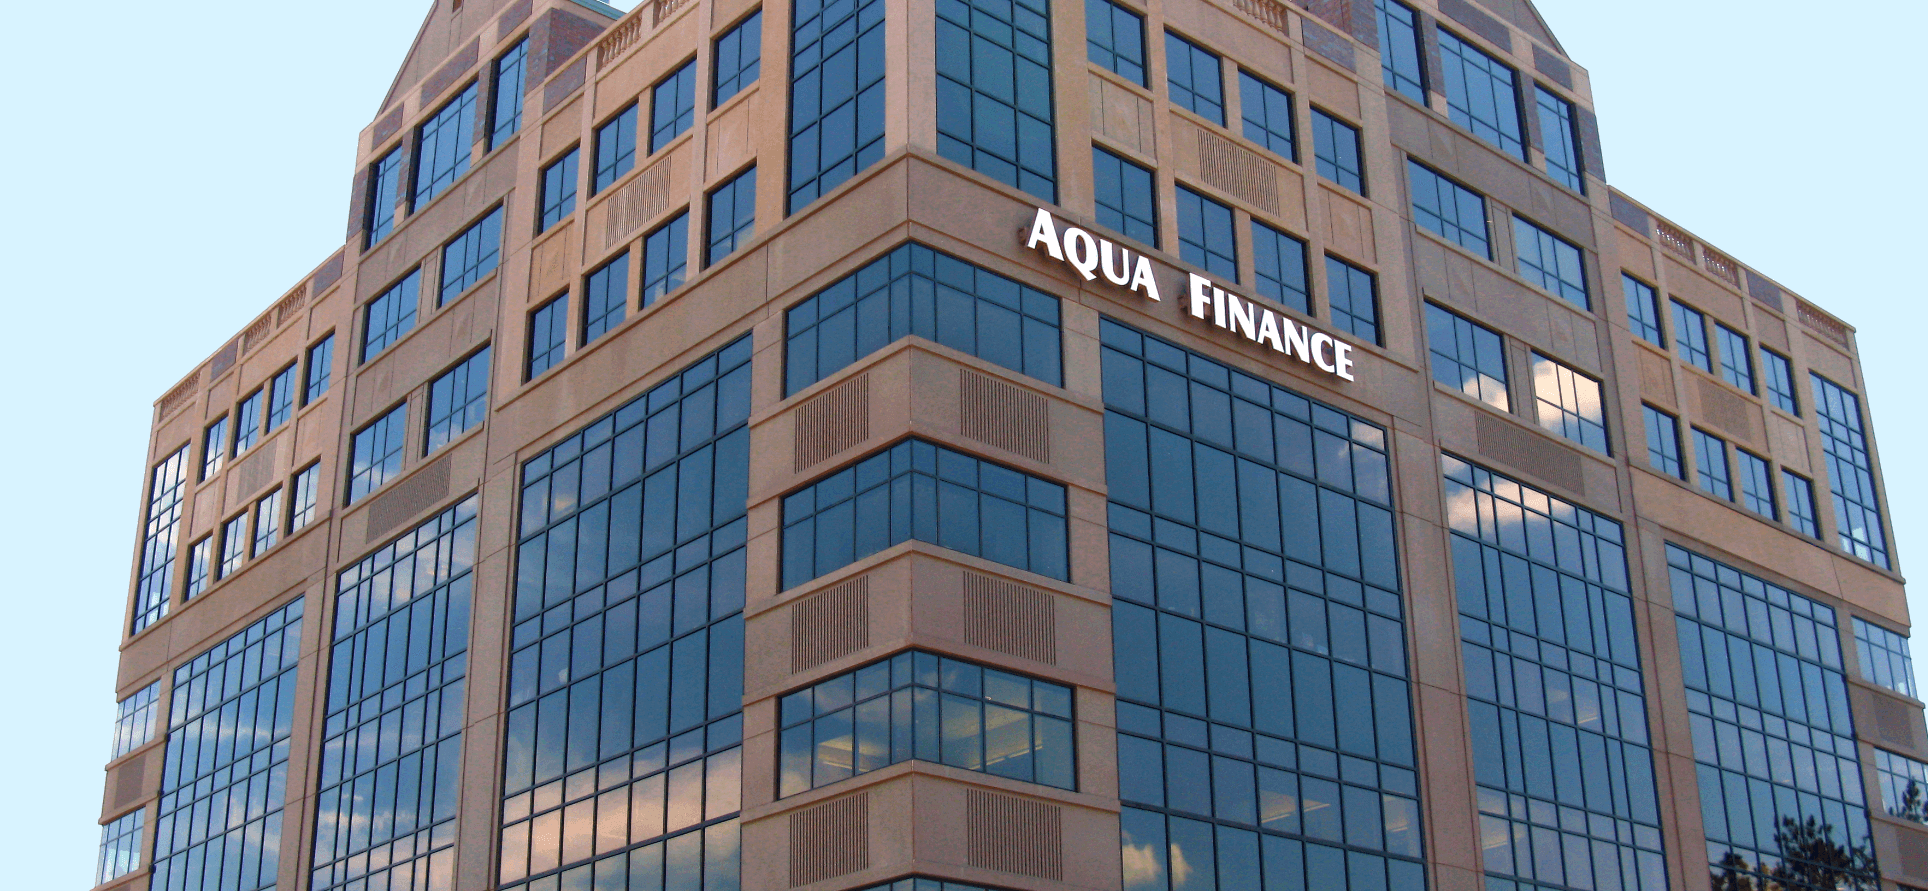 Aqua Finance headquarters.